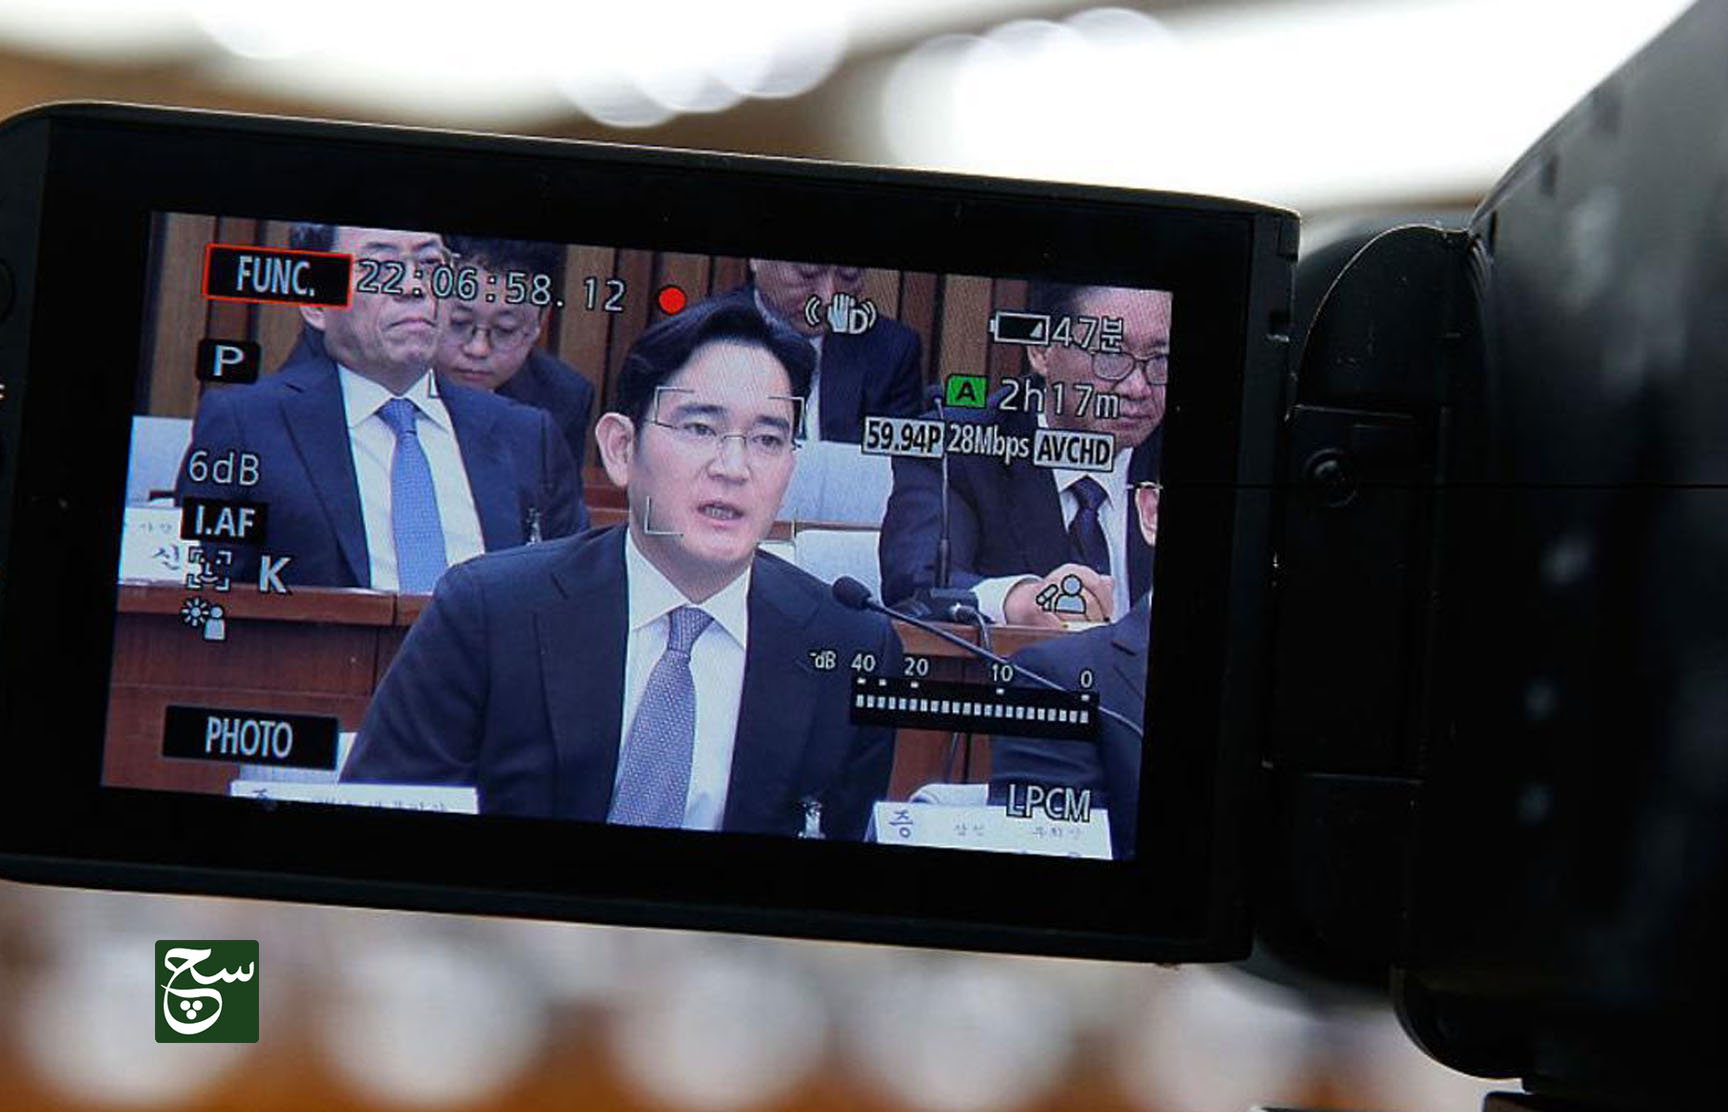 القضاء يرفض اعتقال رئيس سامسونغ